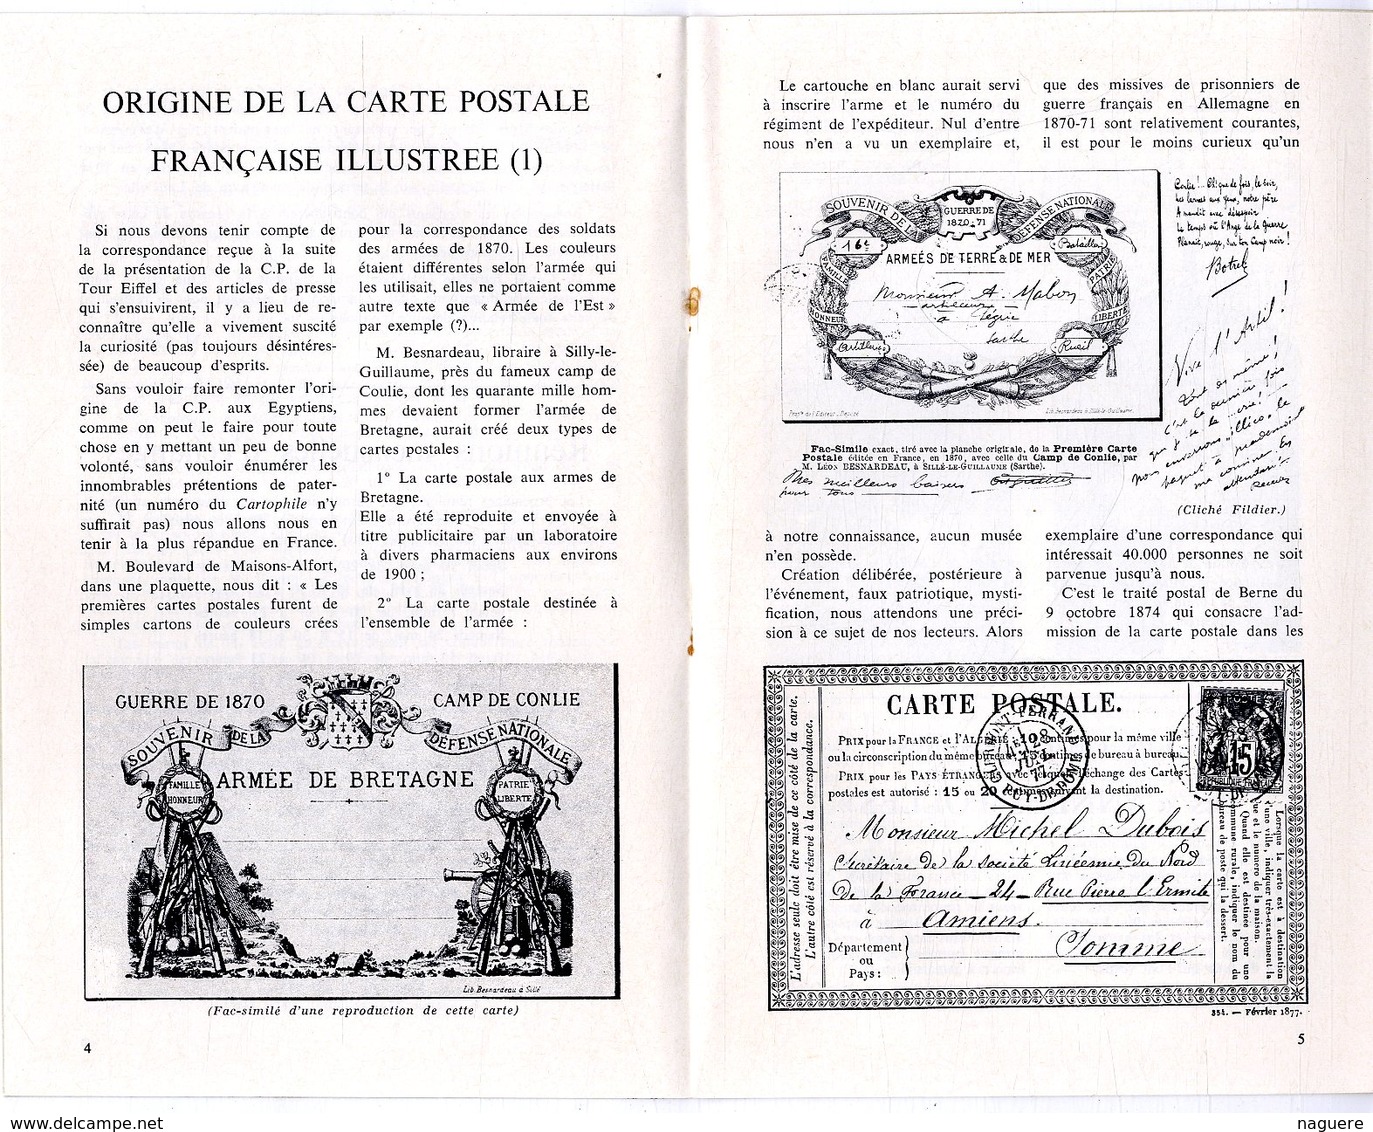 LE CARTOPHILE  MARS 1969  N° 12  -  16 PAGES   ORIGINE DE LA CARTE POSTALE ILLUSTREES  POUR LE PLAISIR Etc .. - French